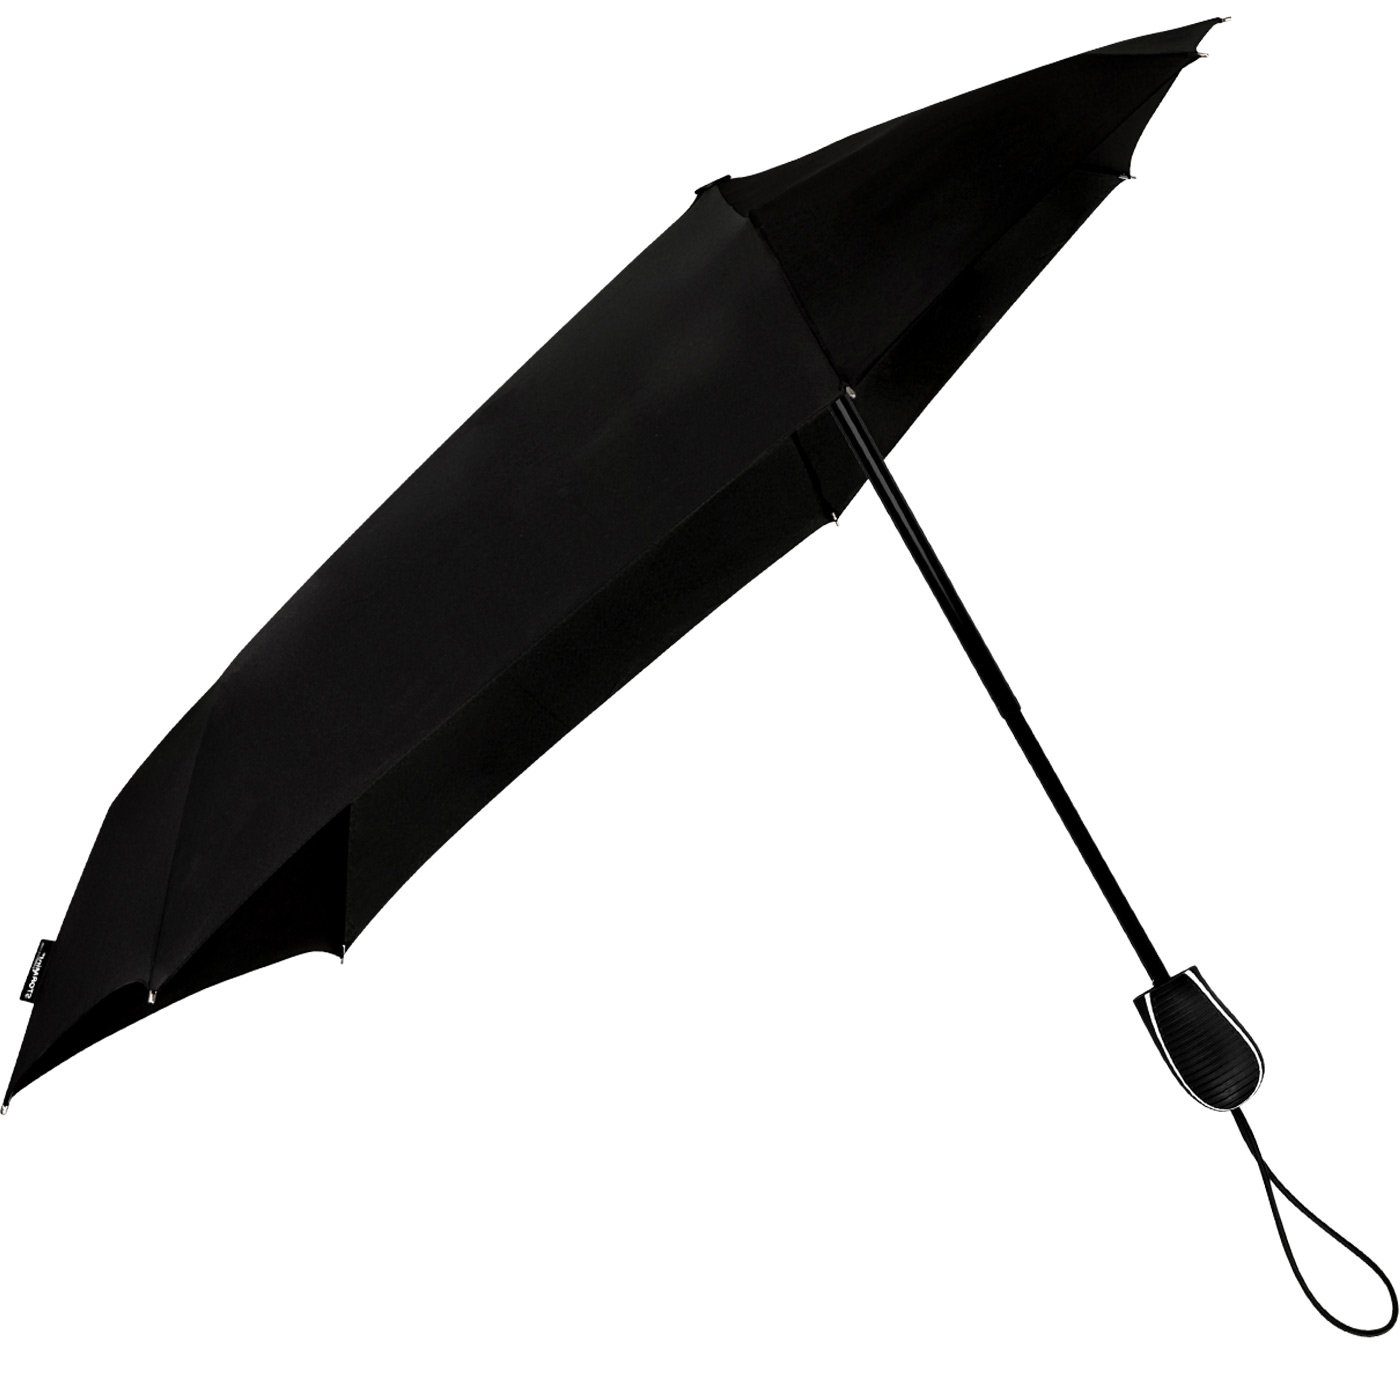 Wind, zu aerodynamischer 80 schwarz besondere seine in km/h Form durch hält Schirm Impliva STORMini bis Sturmschirm, dreht Taschenregenschirm der sich aus den